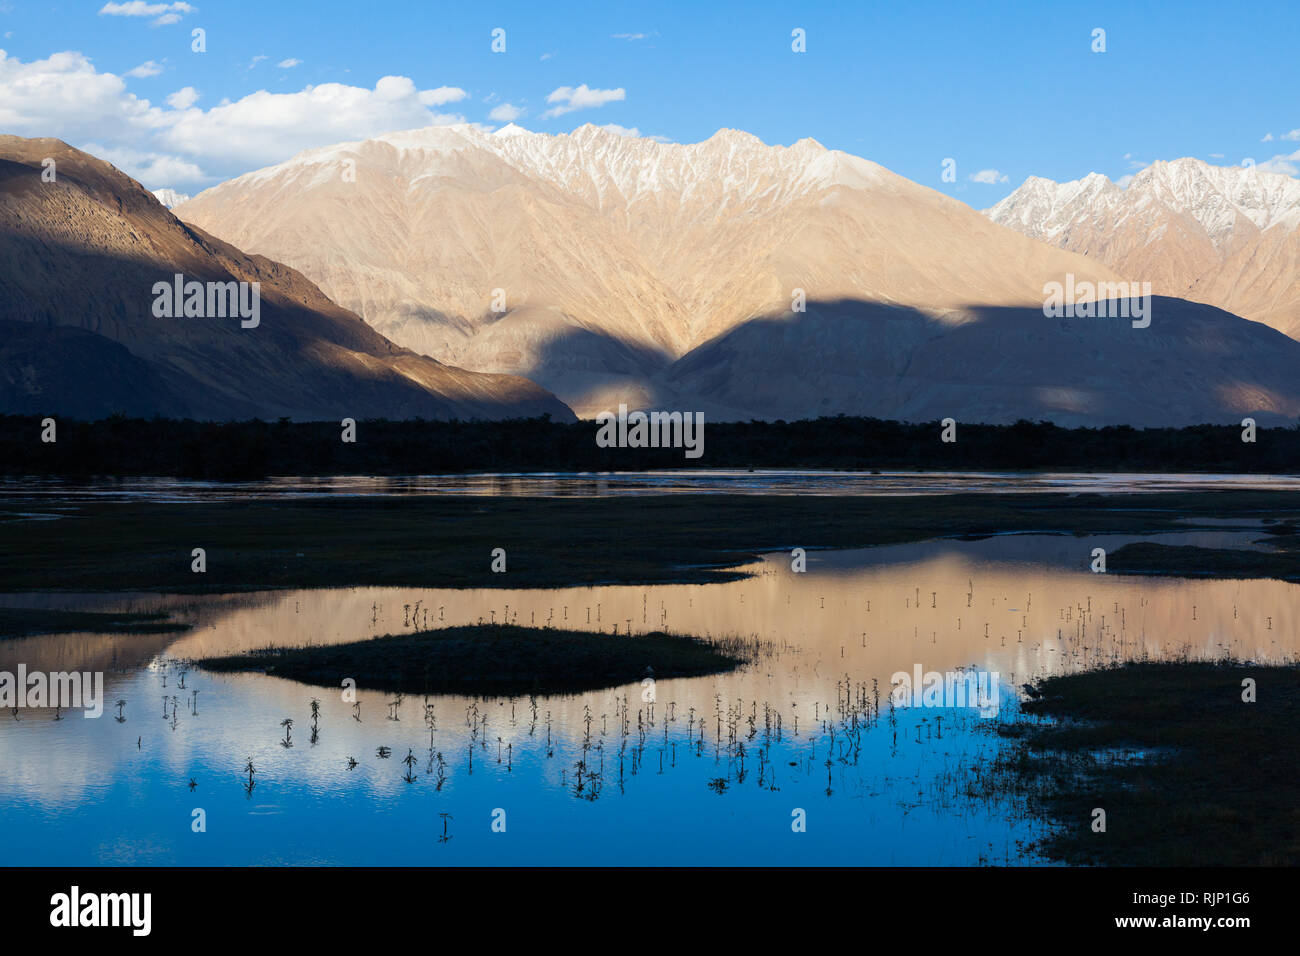 Landschaft mit leicht schneebedeckten Berge im Wasser widerspiegelt, Bereich der Hunder, Nubra Valley, Ladakh, Jammu und Kaschmir, Indien Stockfoto